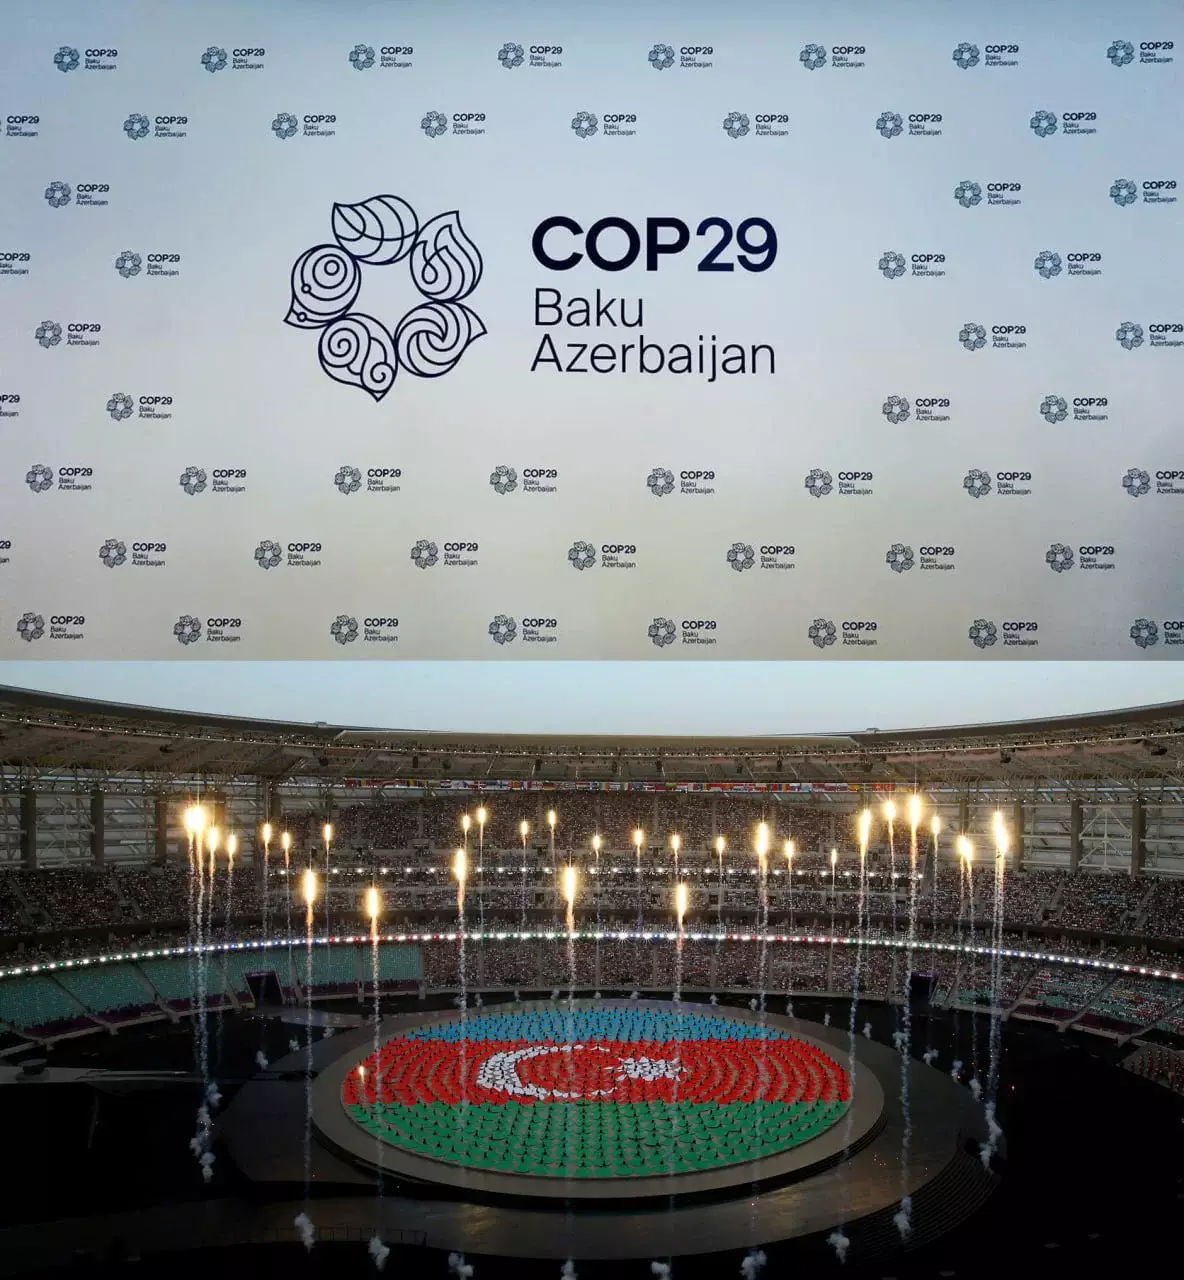 COP29 в Баку - триумф политики Азербайджана  